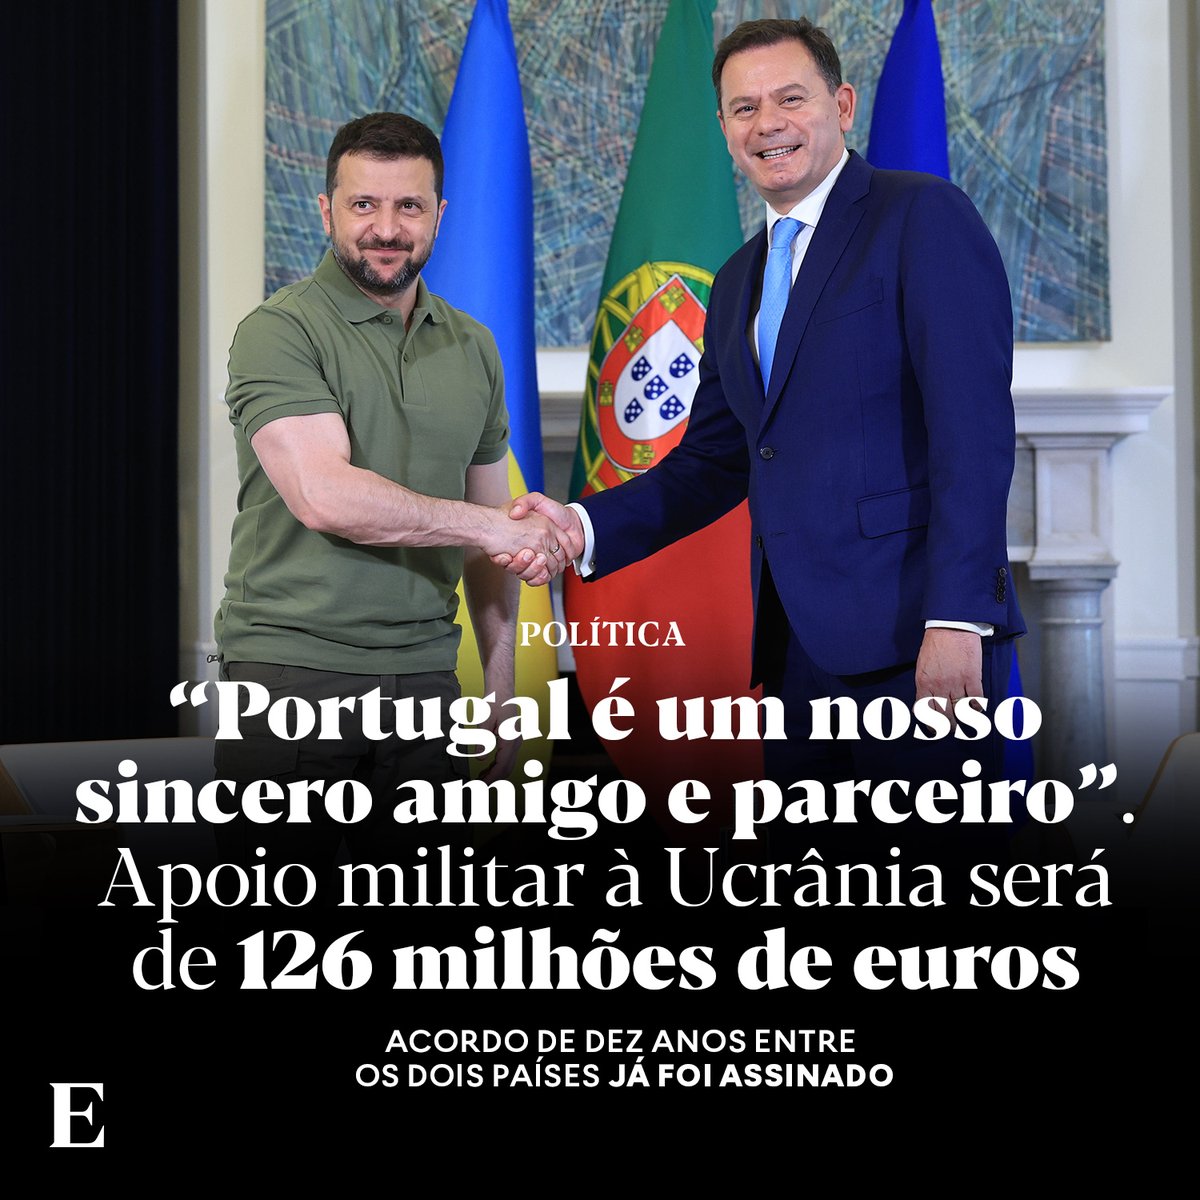 Enquanto financiamos uma guerra perdida com 126 milhões de euros temos milhares de portugueses na miséria e a viver nas ruas.

Portugal prioriza todos os cidadãos, menos os portugueses.